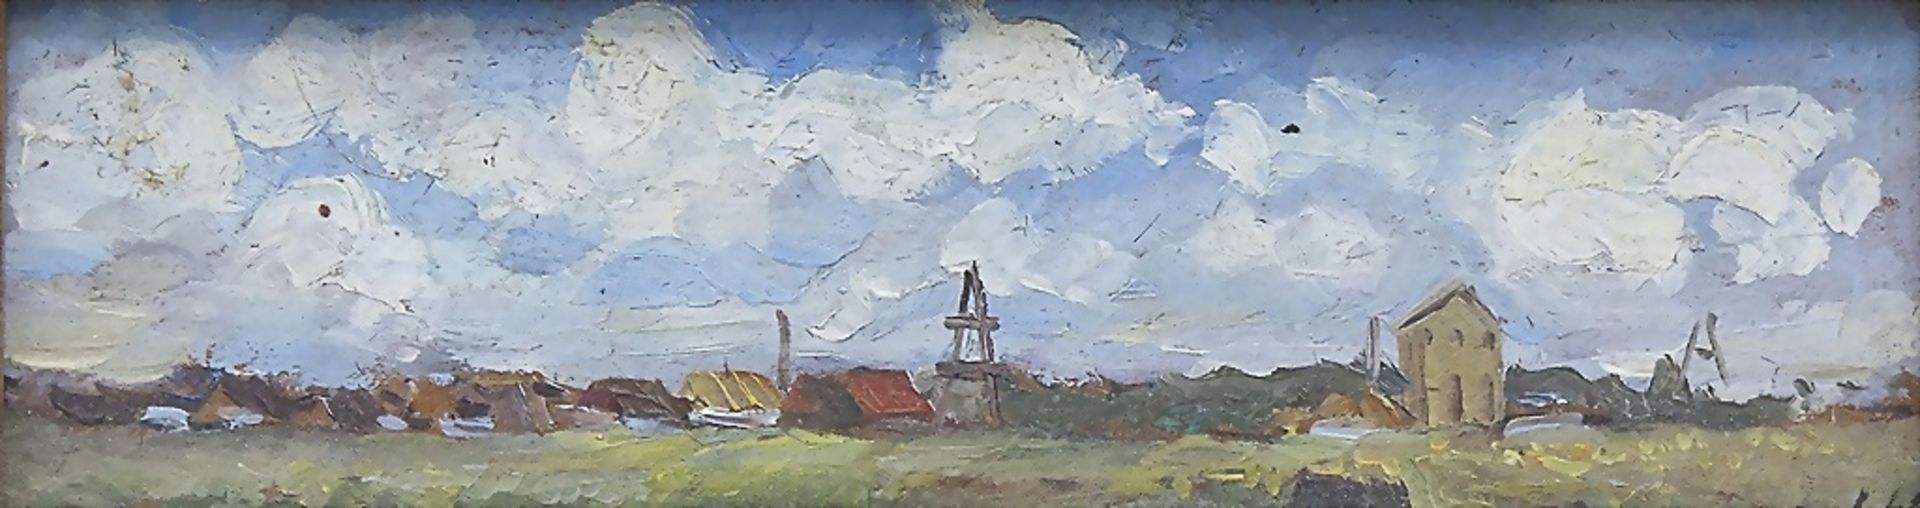 5 Landschaftsgemälde/5 Landscape Paintings, Mikhail Sapojnikow (Russland, geb. 1920), 1948-1953 - Bild 6 aus 6